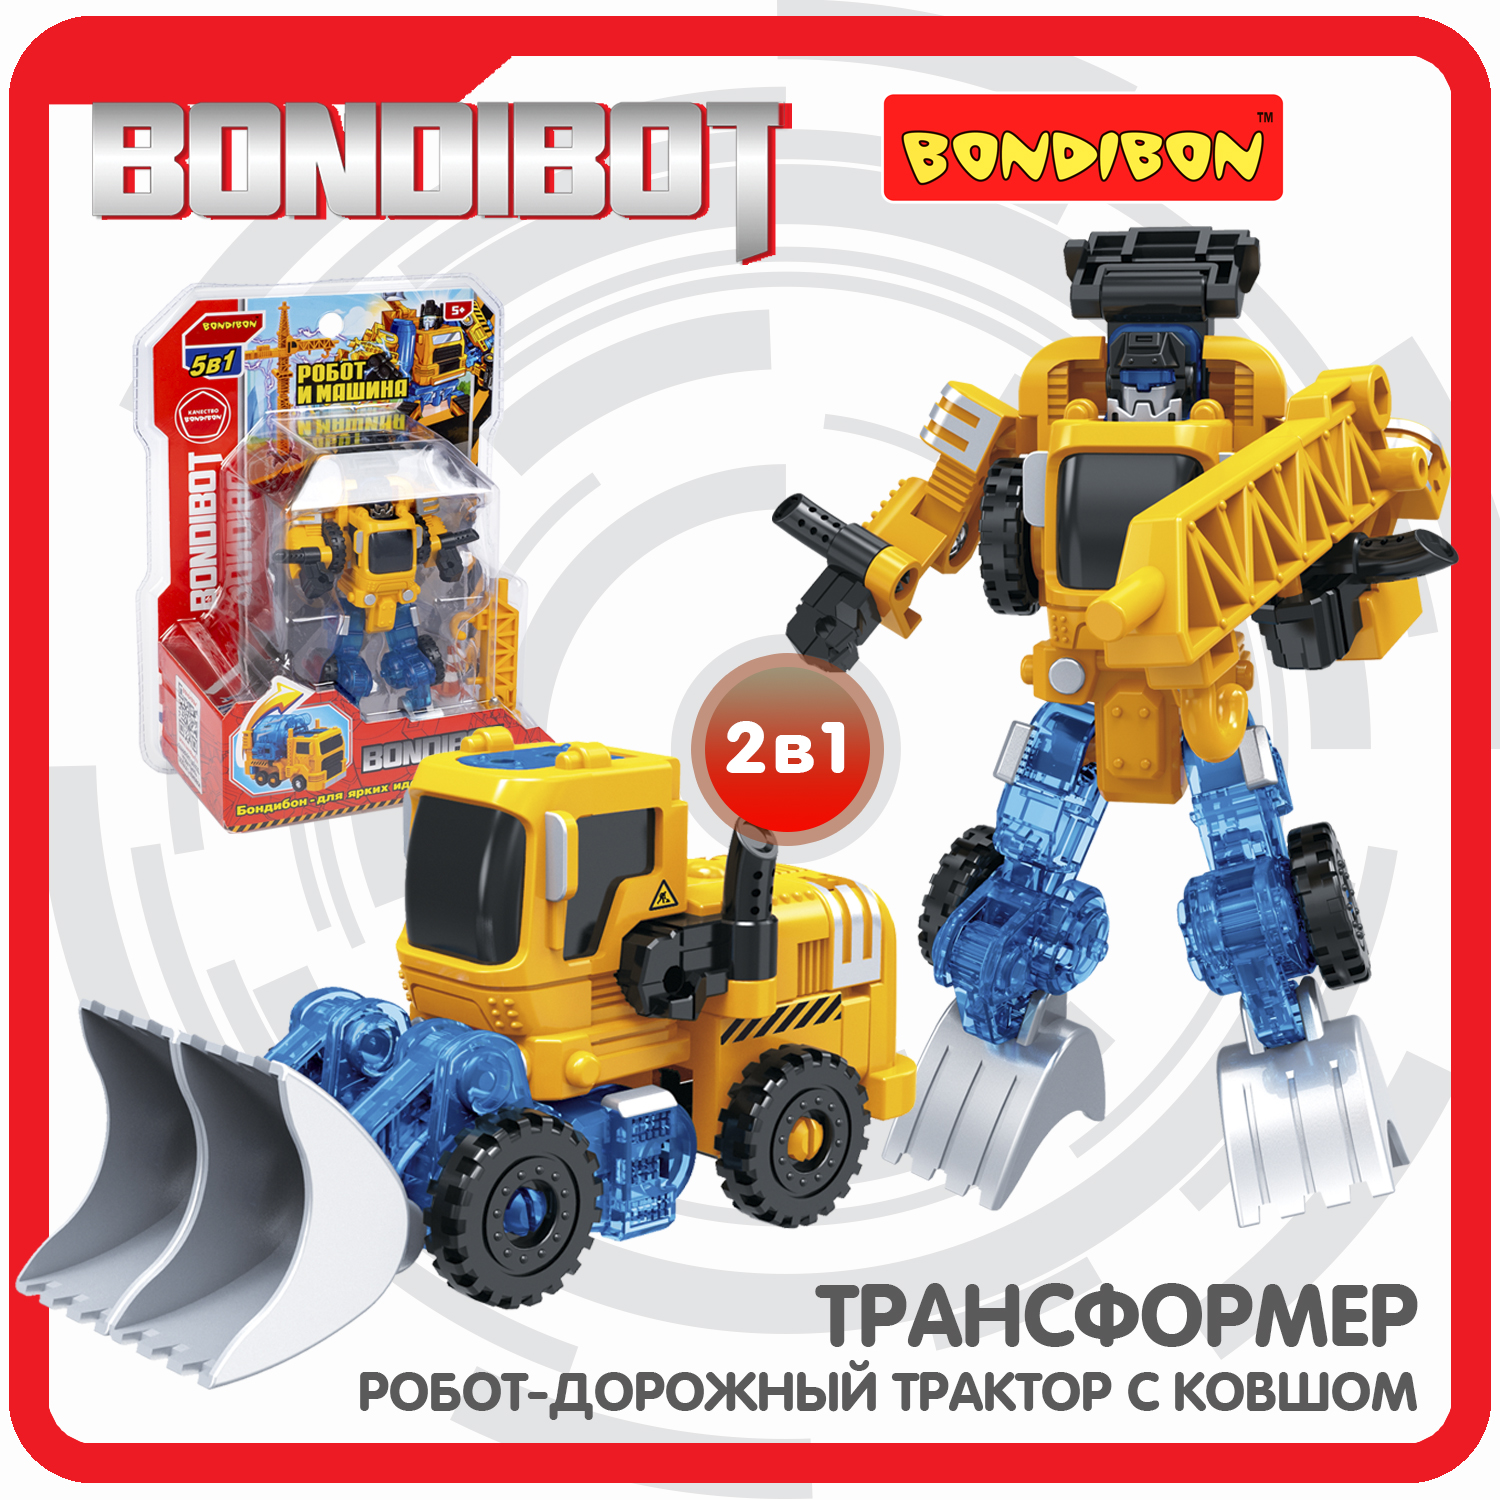 Трансформер 2в1 BONDIBOT Bondibon робот-строит.техника дорож.трактор с ковшом CRD20x15x8см игрушка viking toys ecoline hearts трактор с ковшом